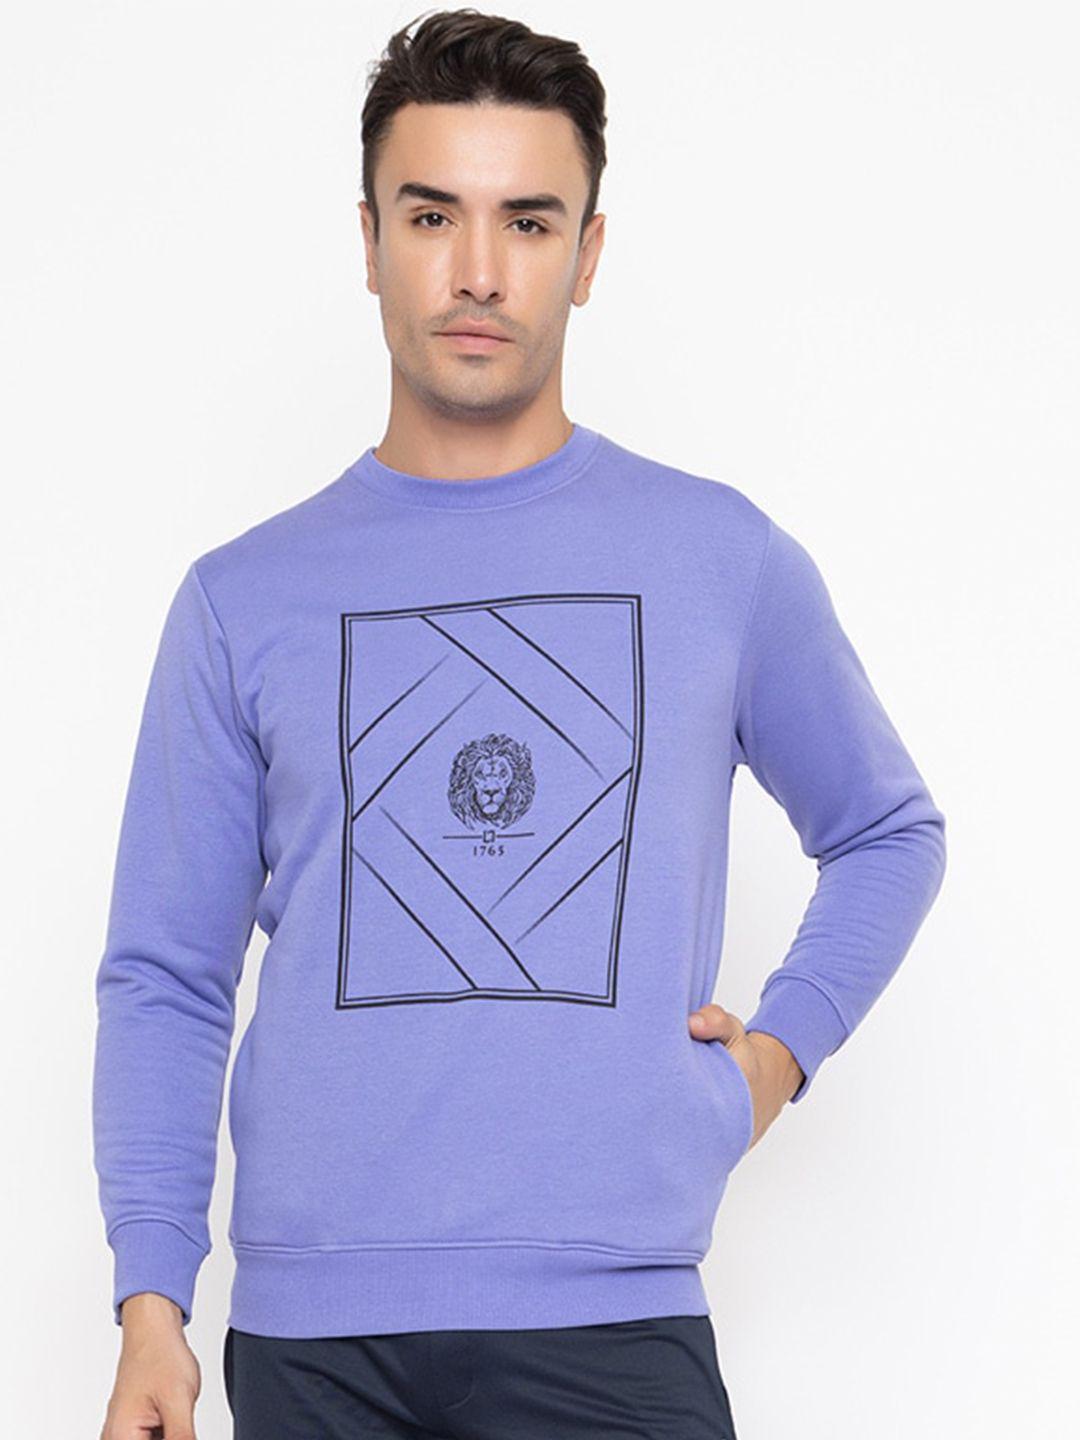 armisto-men-purple-printed-sweatshirt